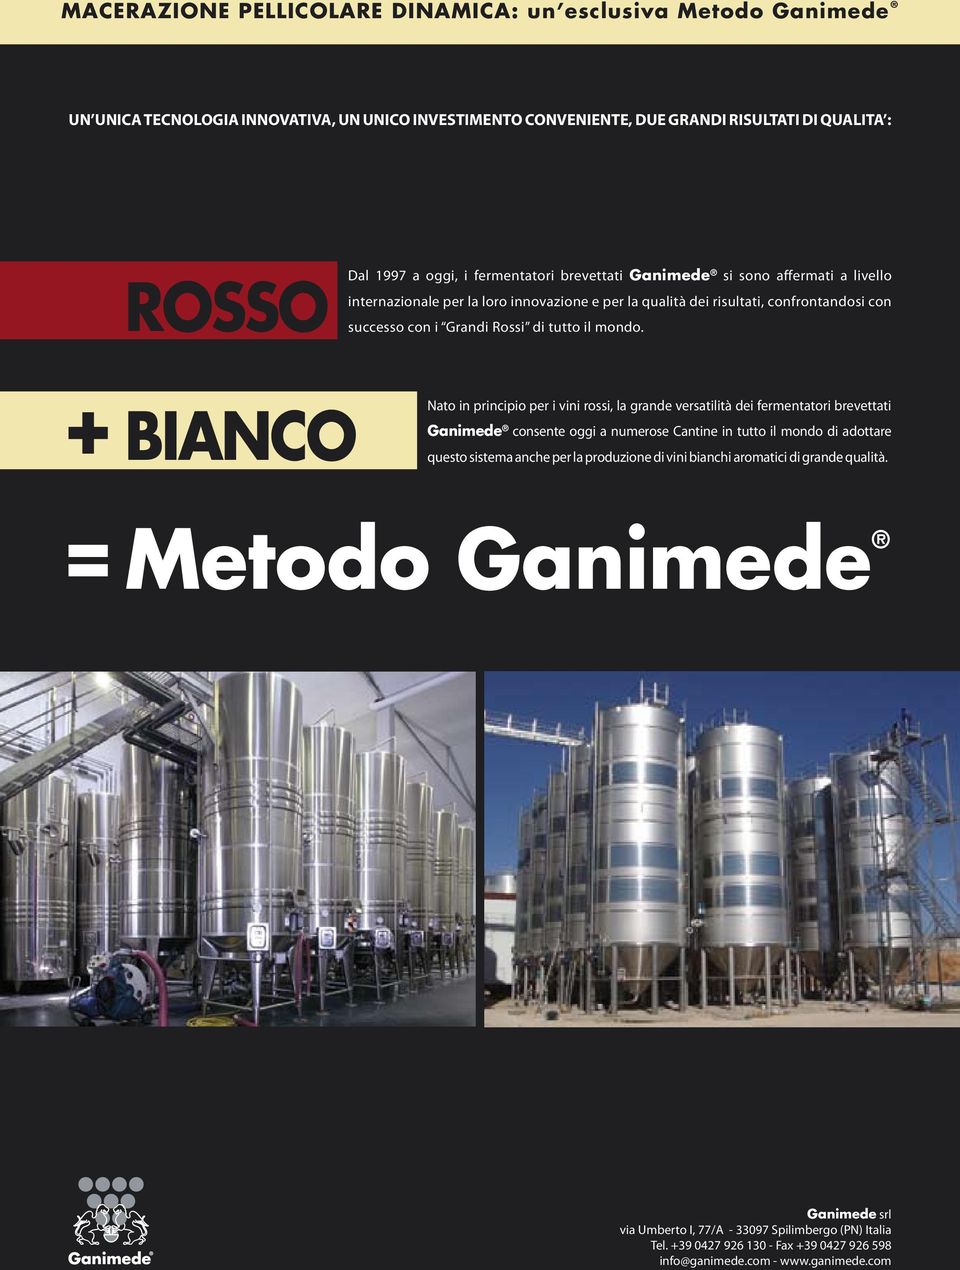 BIANCO Nato in principio per i vini rossi, la grande versatilità dei fermentatori brevettati Ganimede consente oggi a numerose Cantine in tutto il mondo di adottare questo sistema anche per la